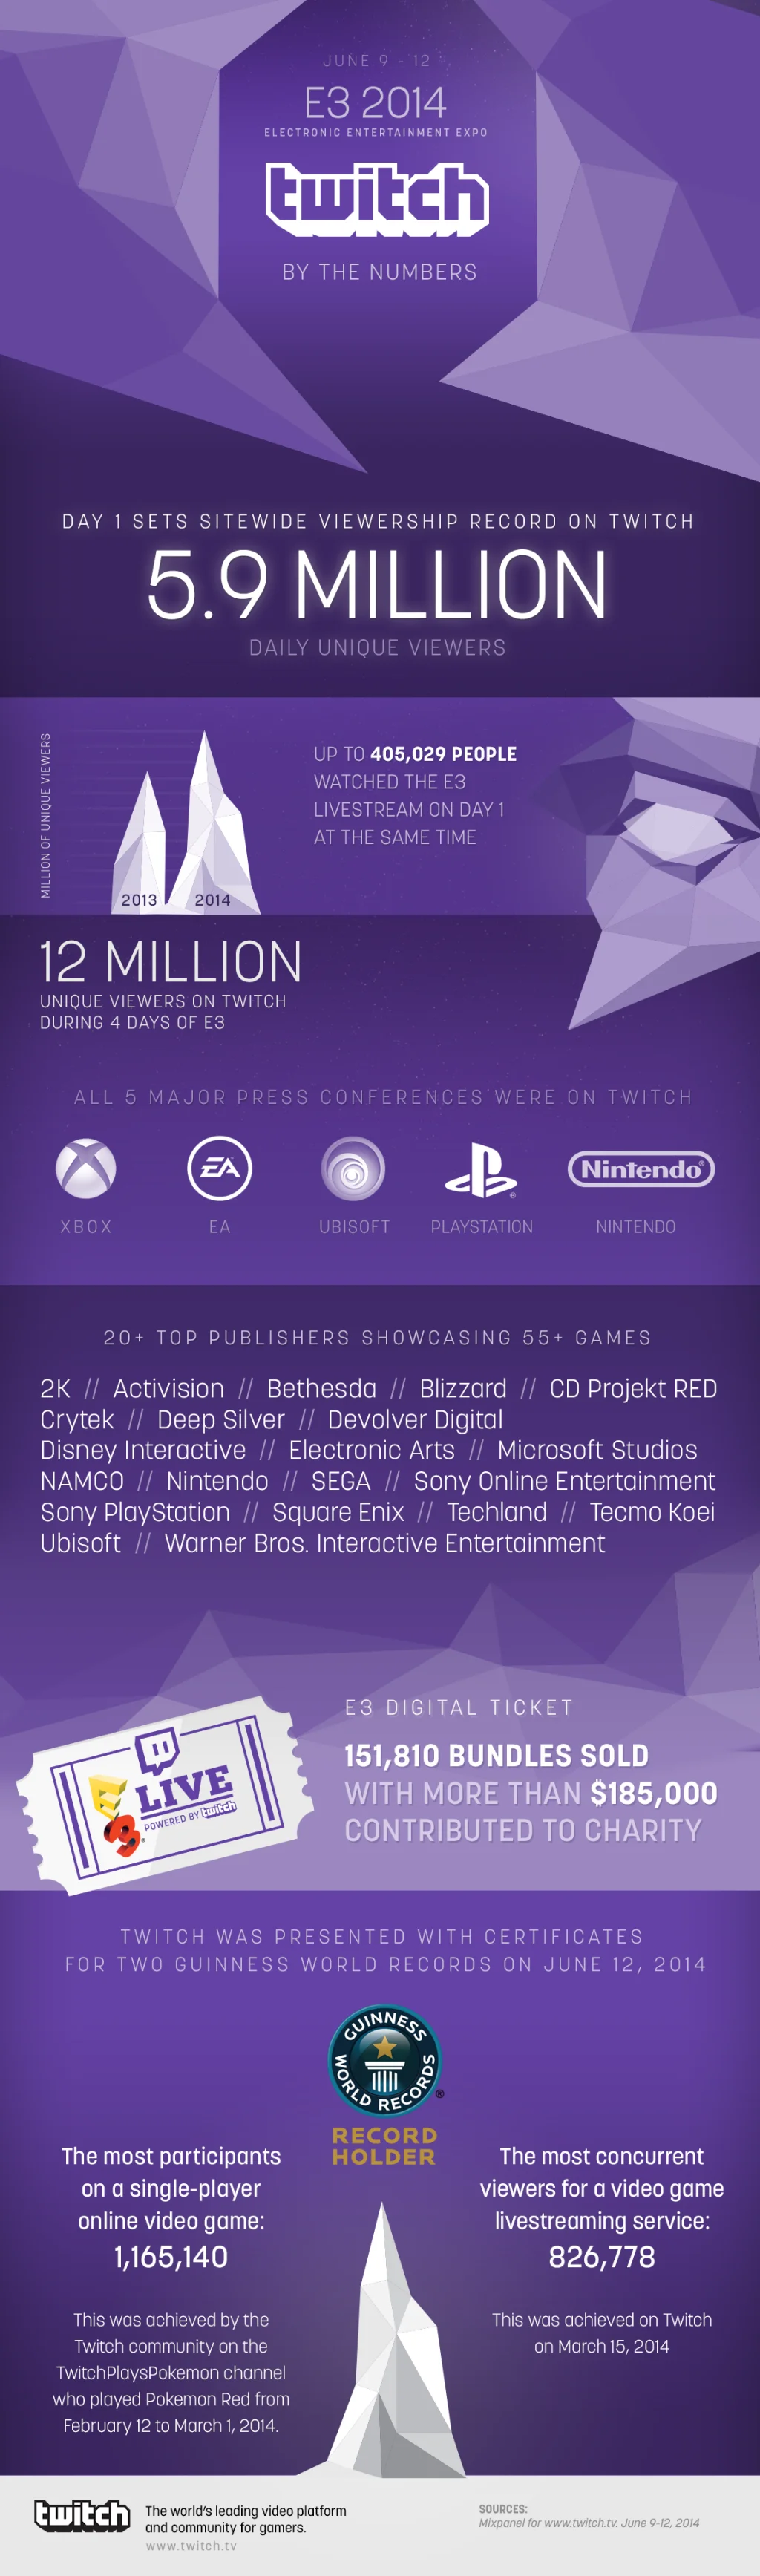 E3 2014 помогла Twitch поставить рекорд по числу зрителей
